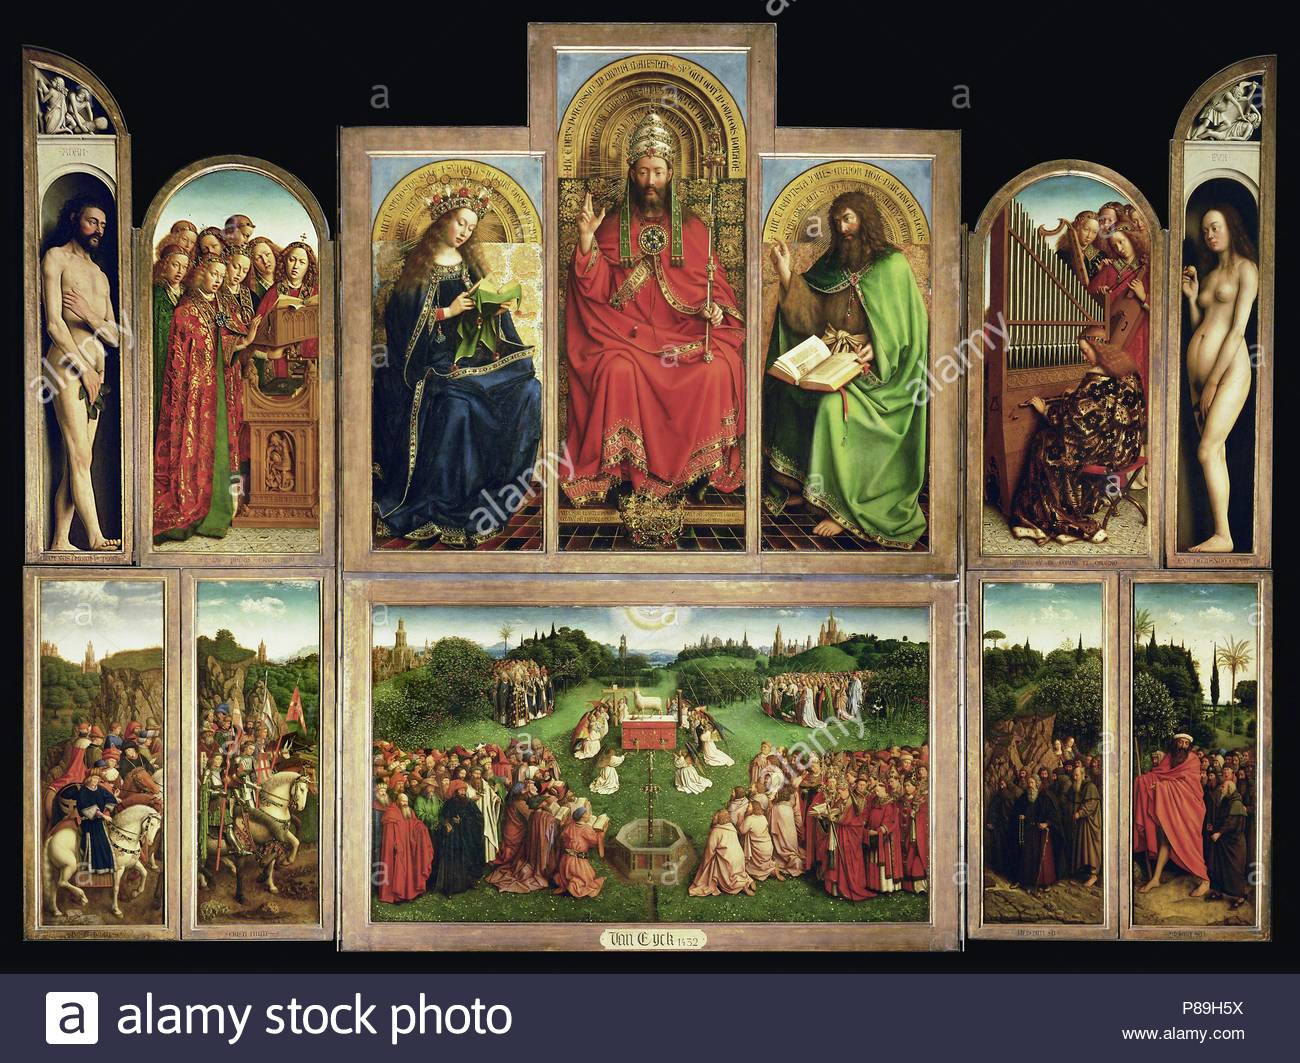 Jan Van Eyck Ghent Altarpiece Stock Photos & Jan Van Eyck Ghent ...